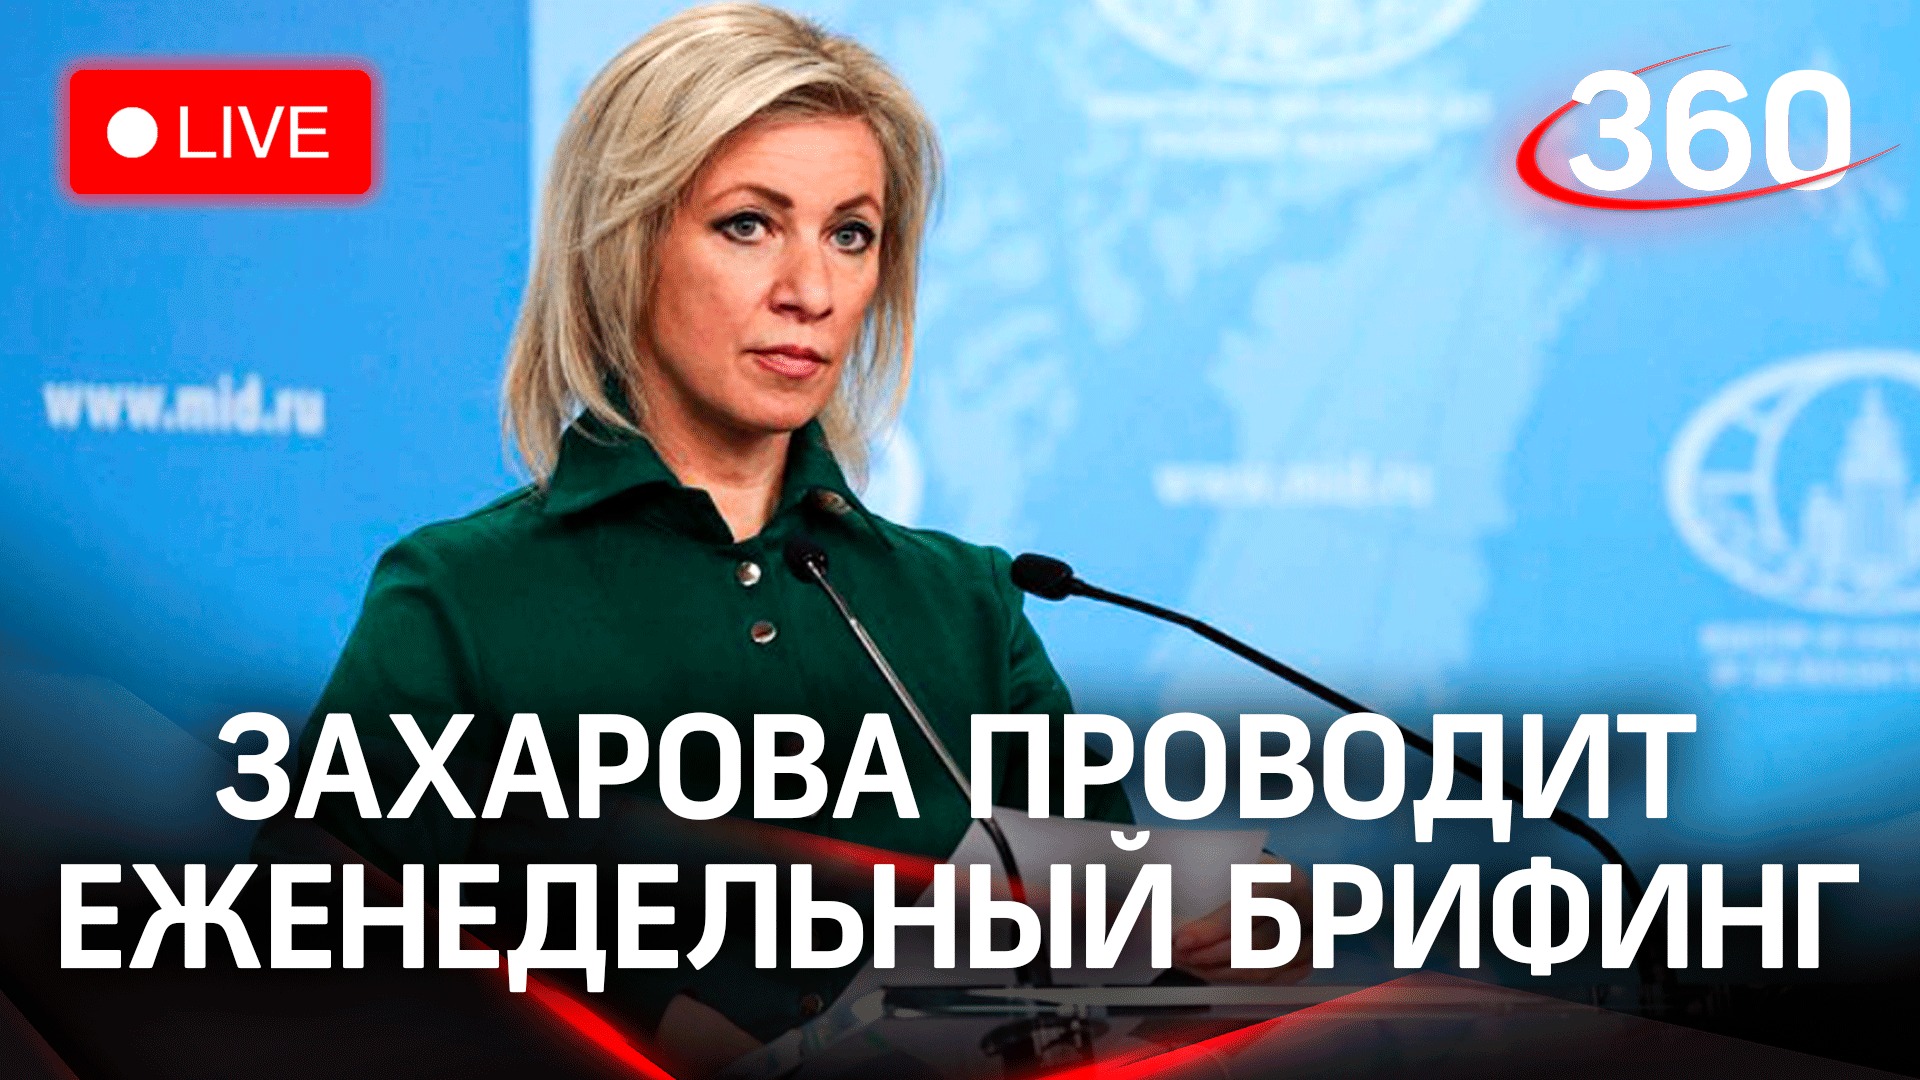 Официальный представитель МИД России Мария Захарова проведет еженедельный брифинг